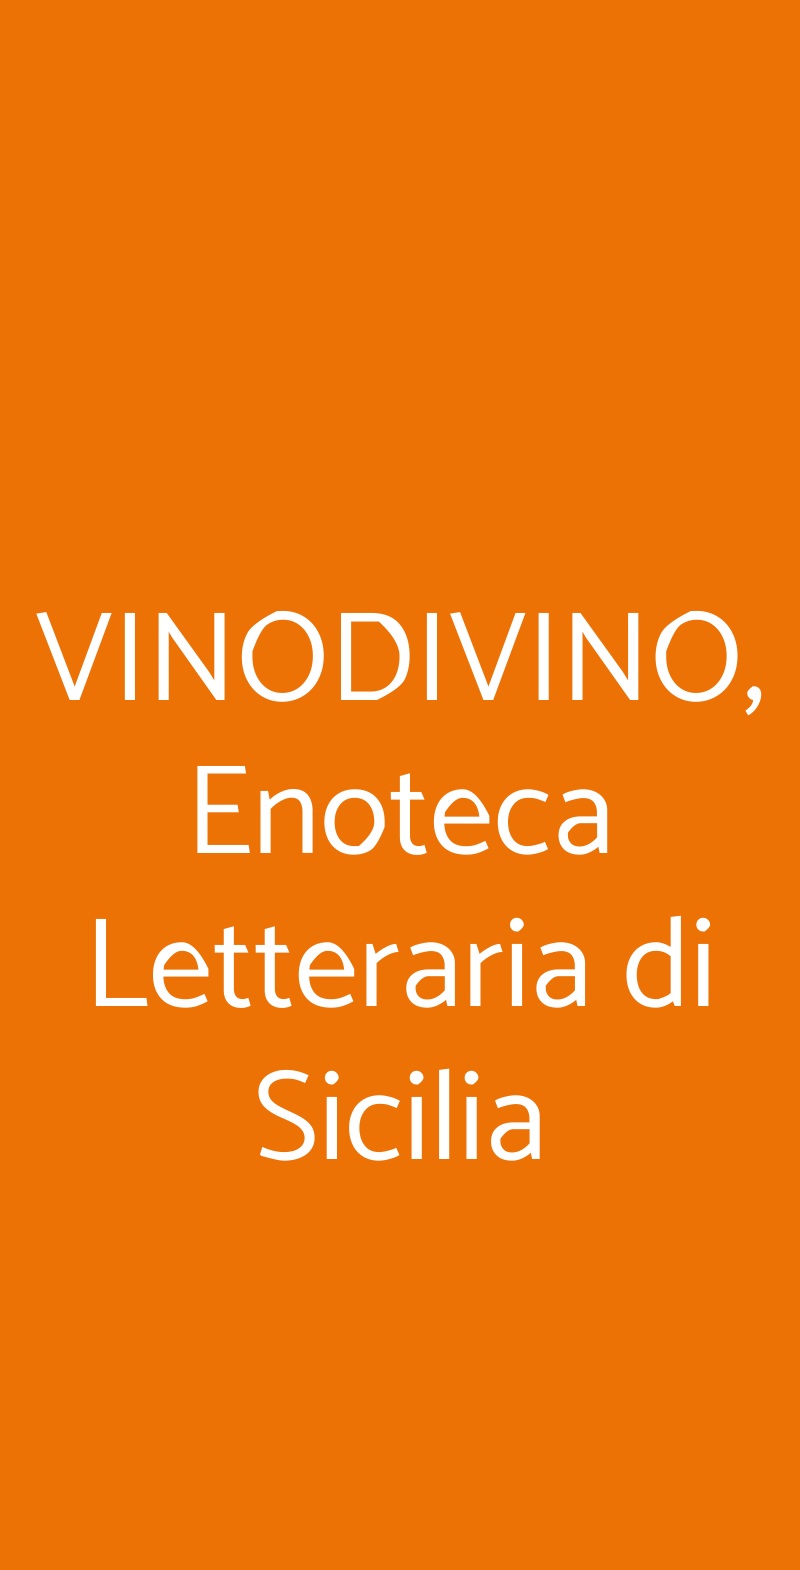 VINODIVINO, Enoteca Letteraria di Sicilia Palermo menù 1 pagina